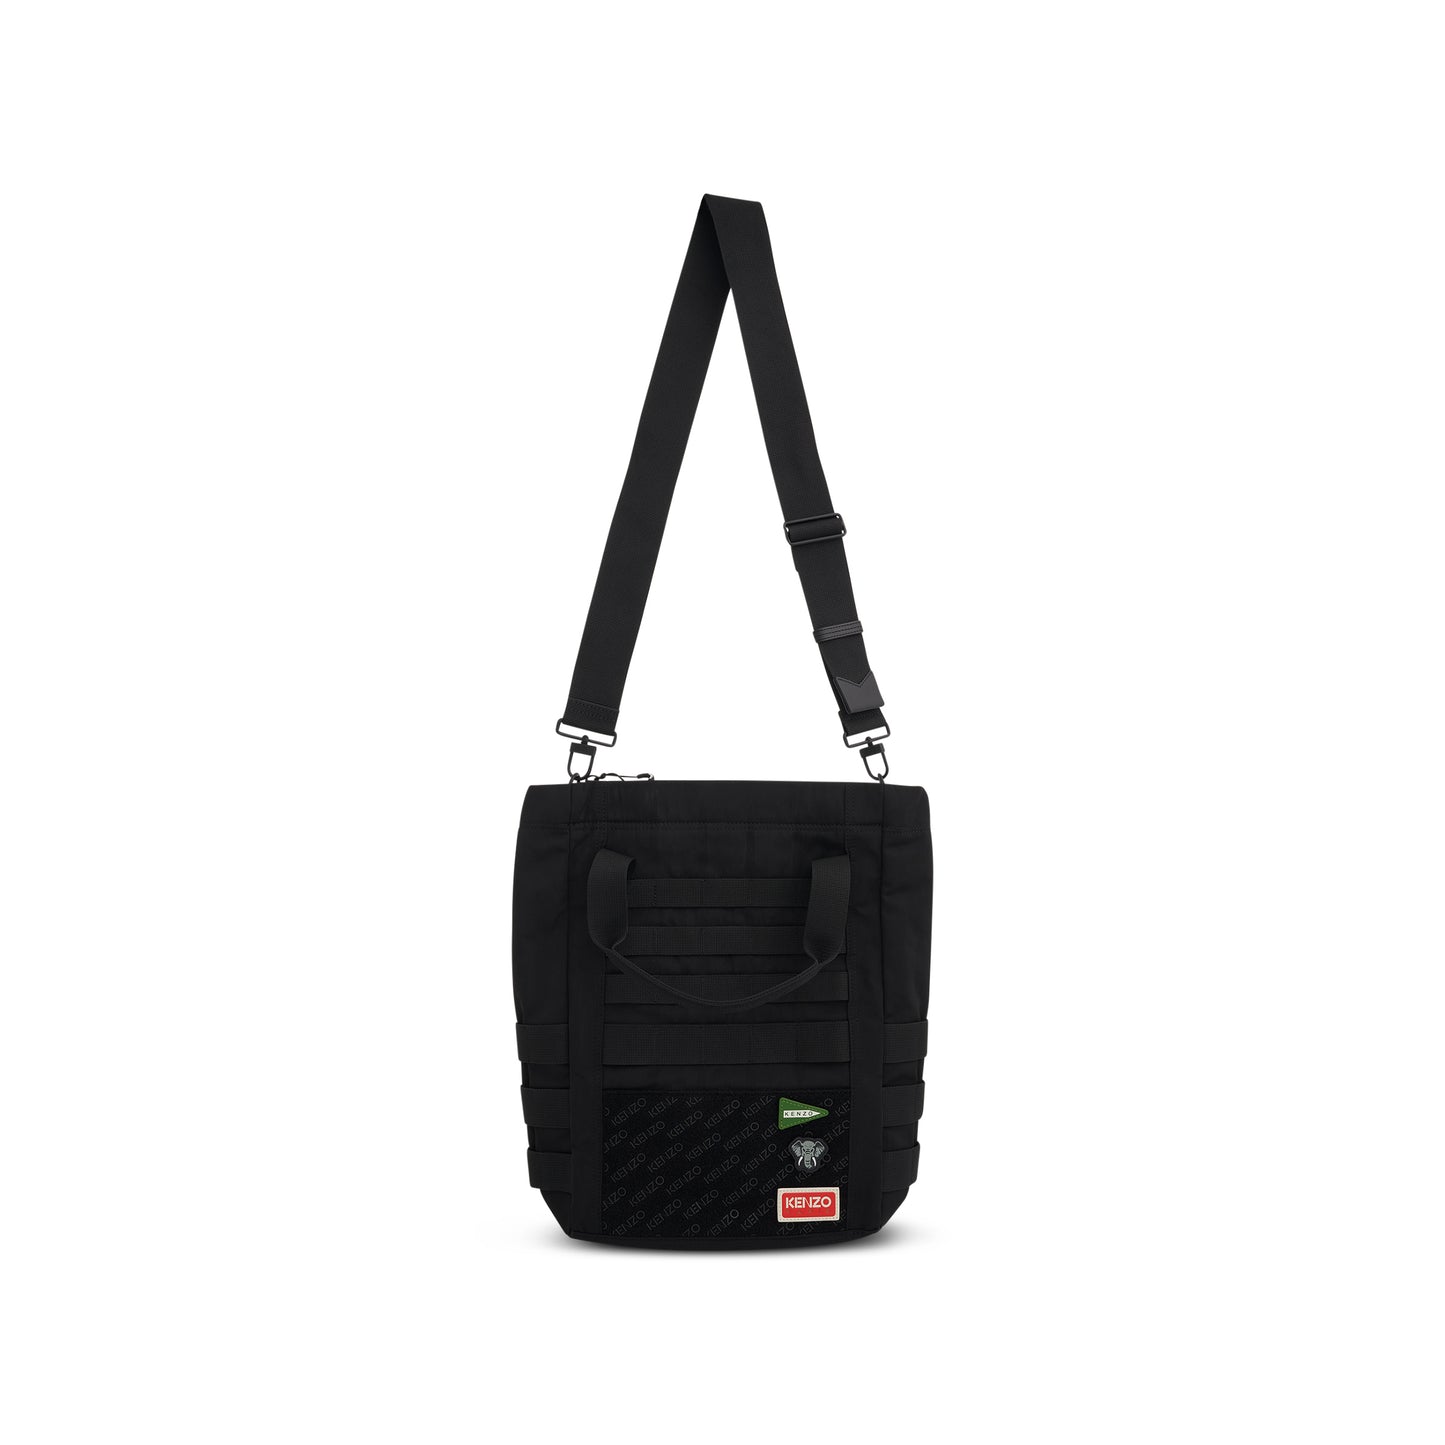 Jungle Shopper/Tote Bag in Black